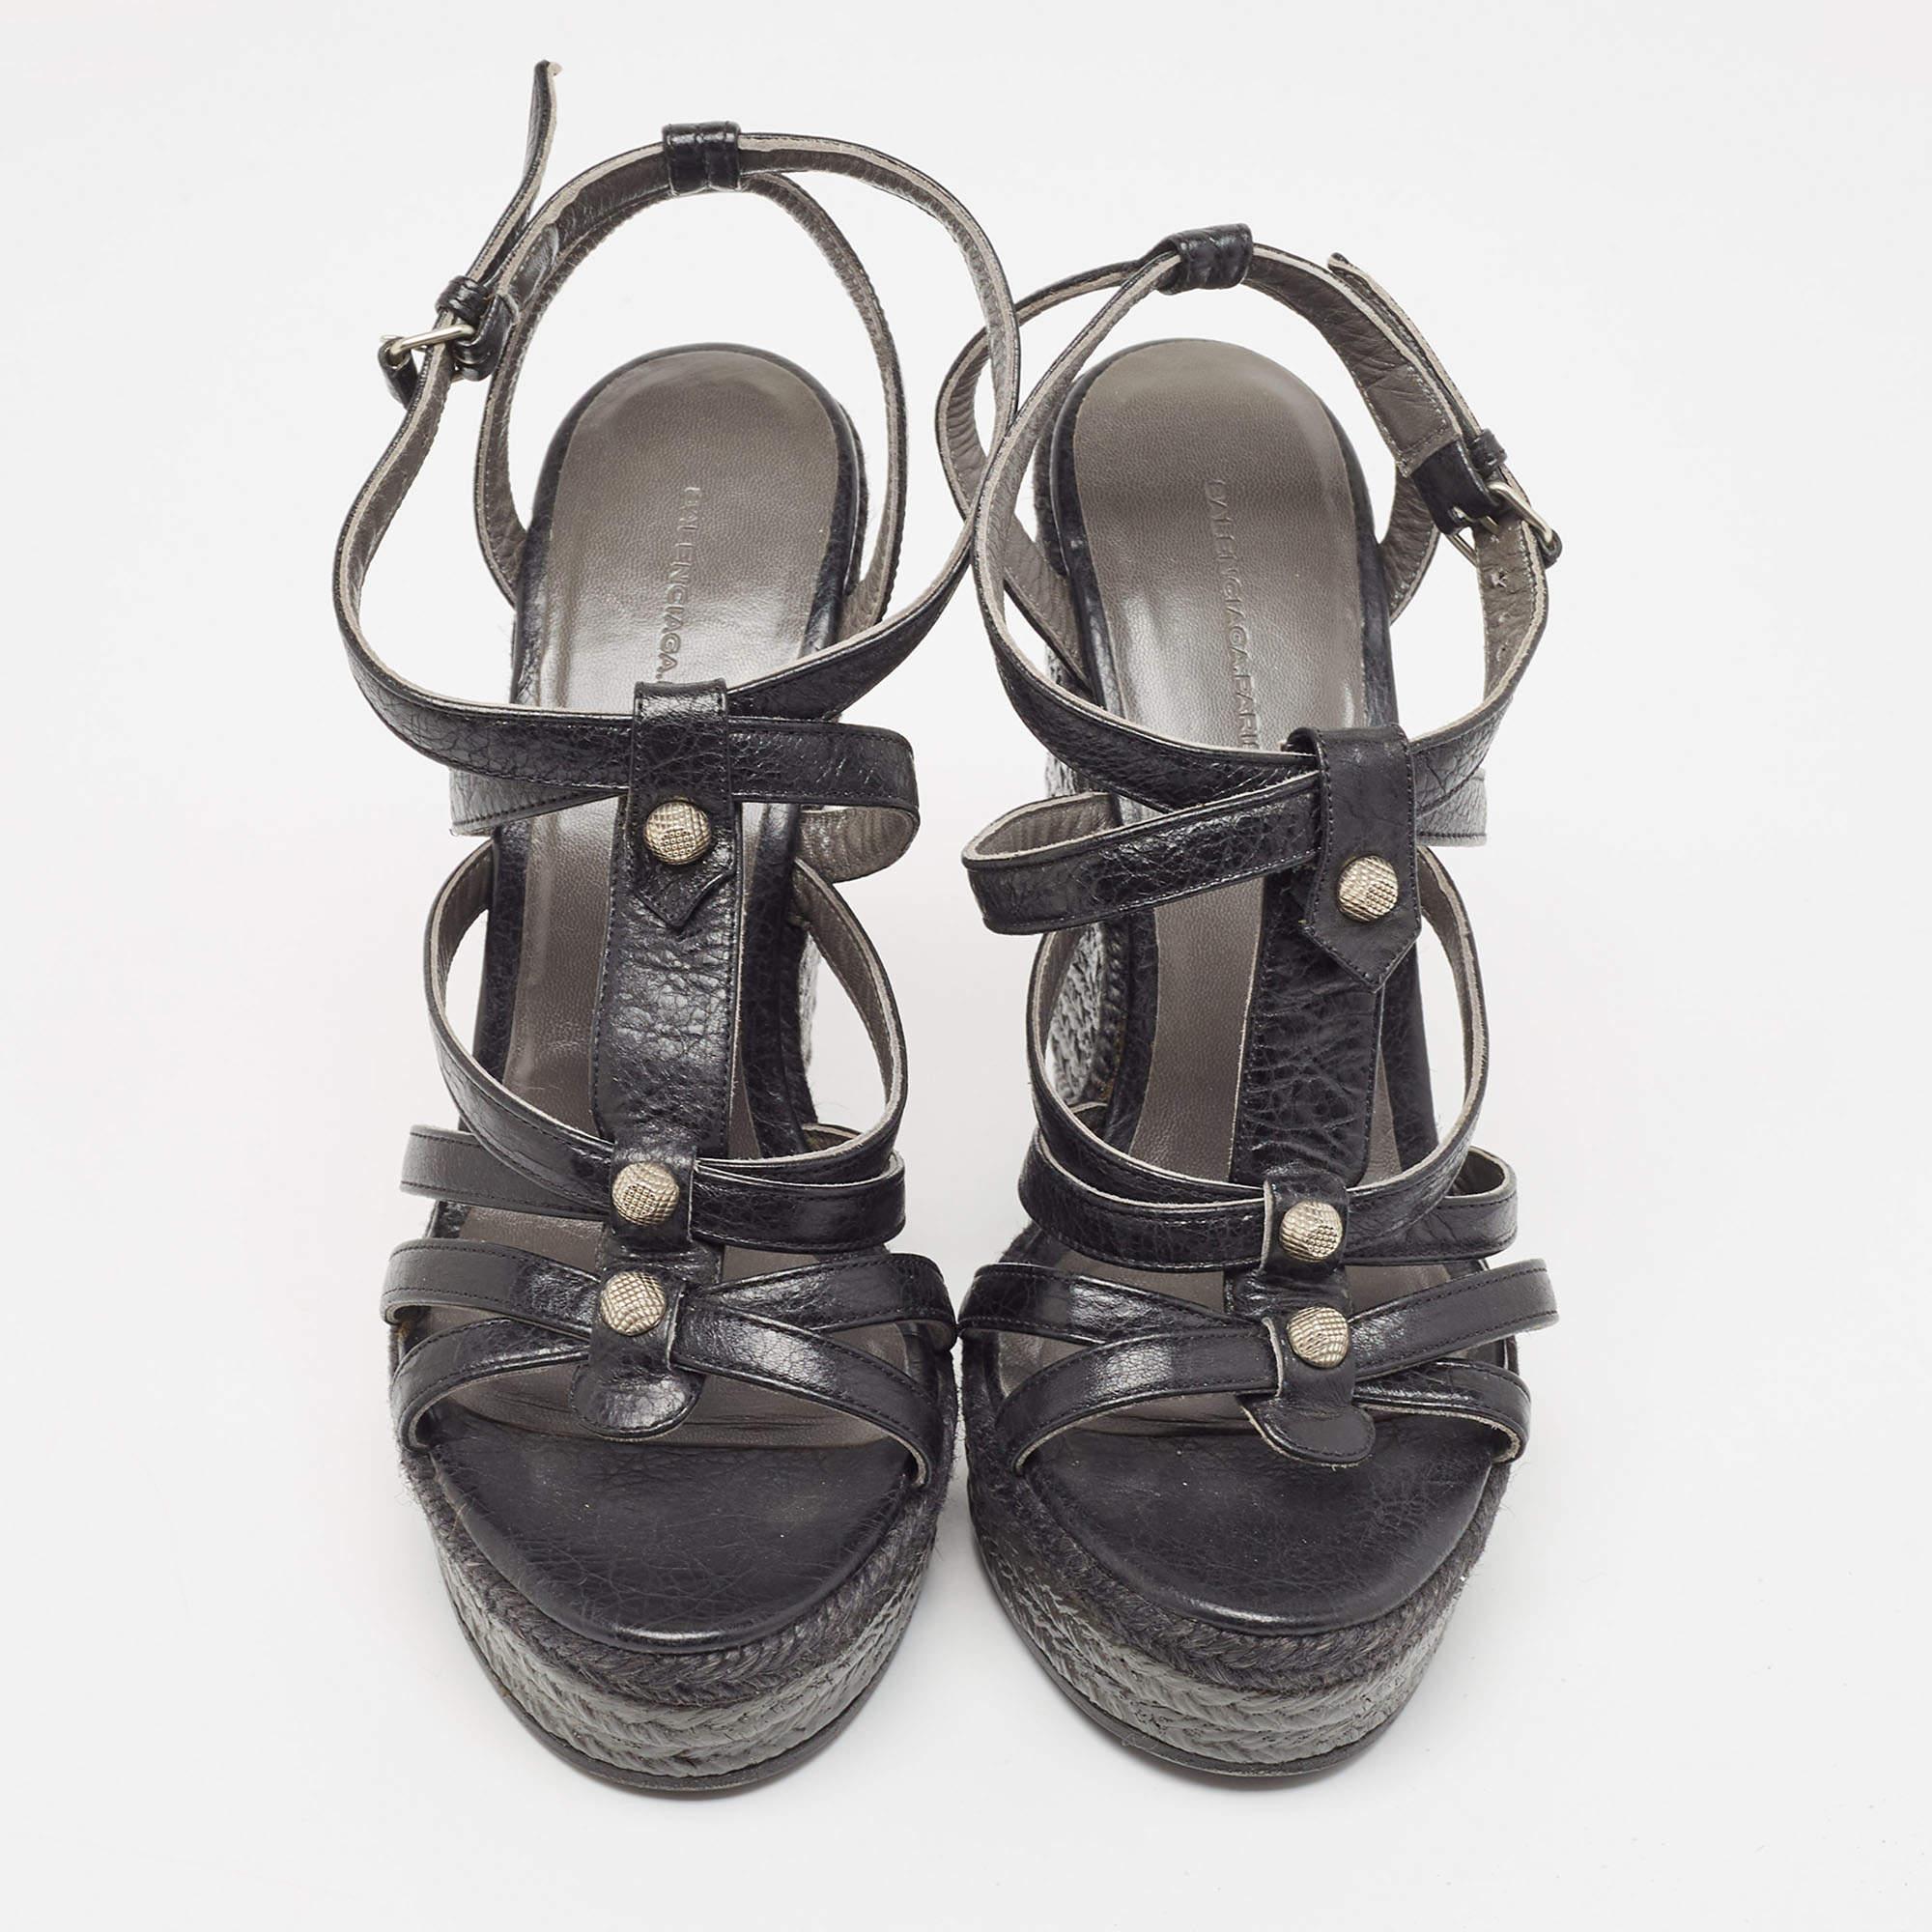 Comme ces sandales de Balenciaga sont belles ! Ces sandales noires sont confectionnées en cuir et présentent une silhouette à bout ouvert. Ils arborent un design en forme de cage et de multiples clous argentés qui ornent les lanières. Dotée de